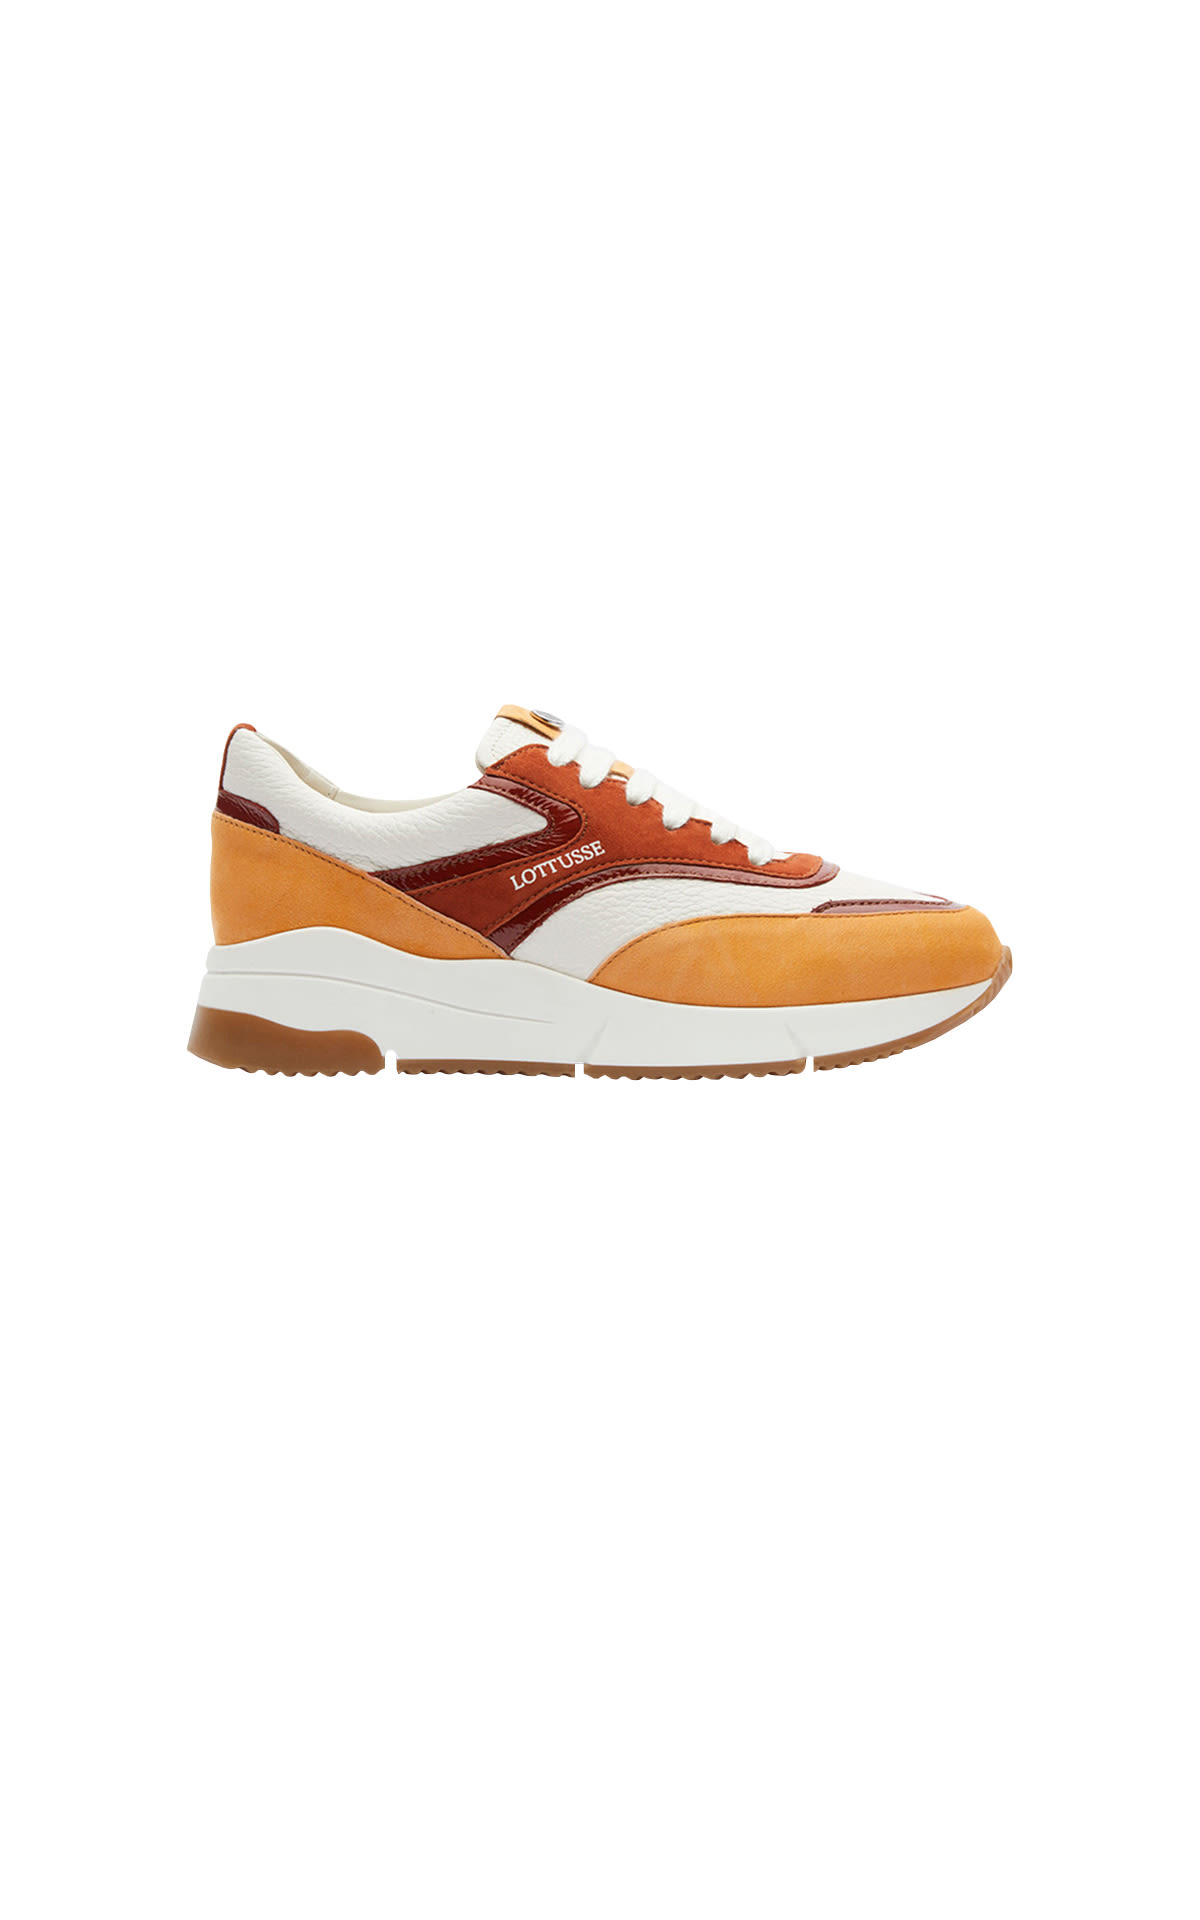 Orange and brown sneakers Lottusse